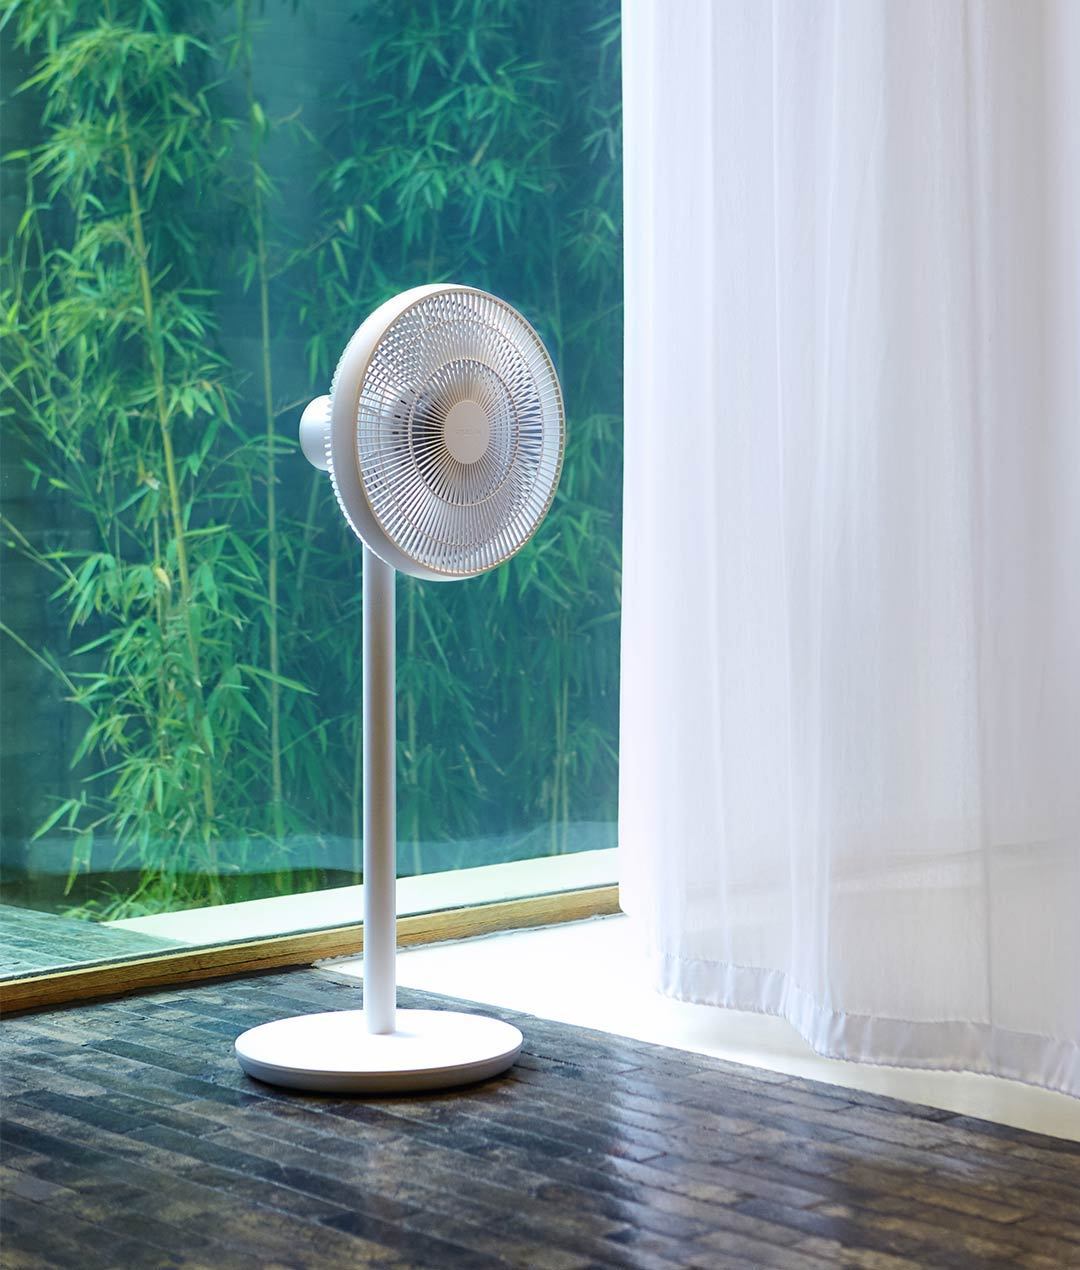 「超逸酷玩」智米自然风风扇伴您健康度过闷热的夏天